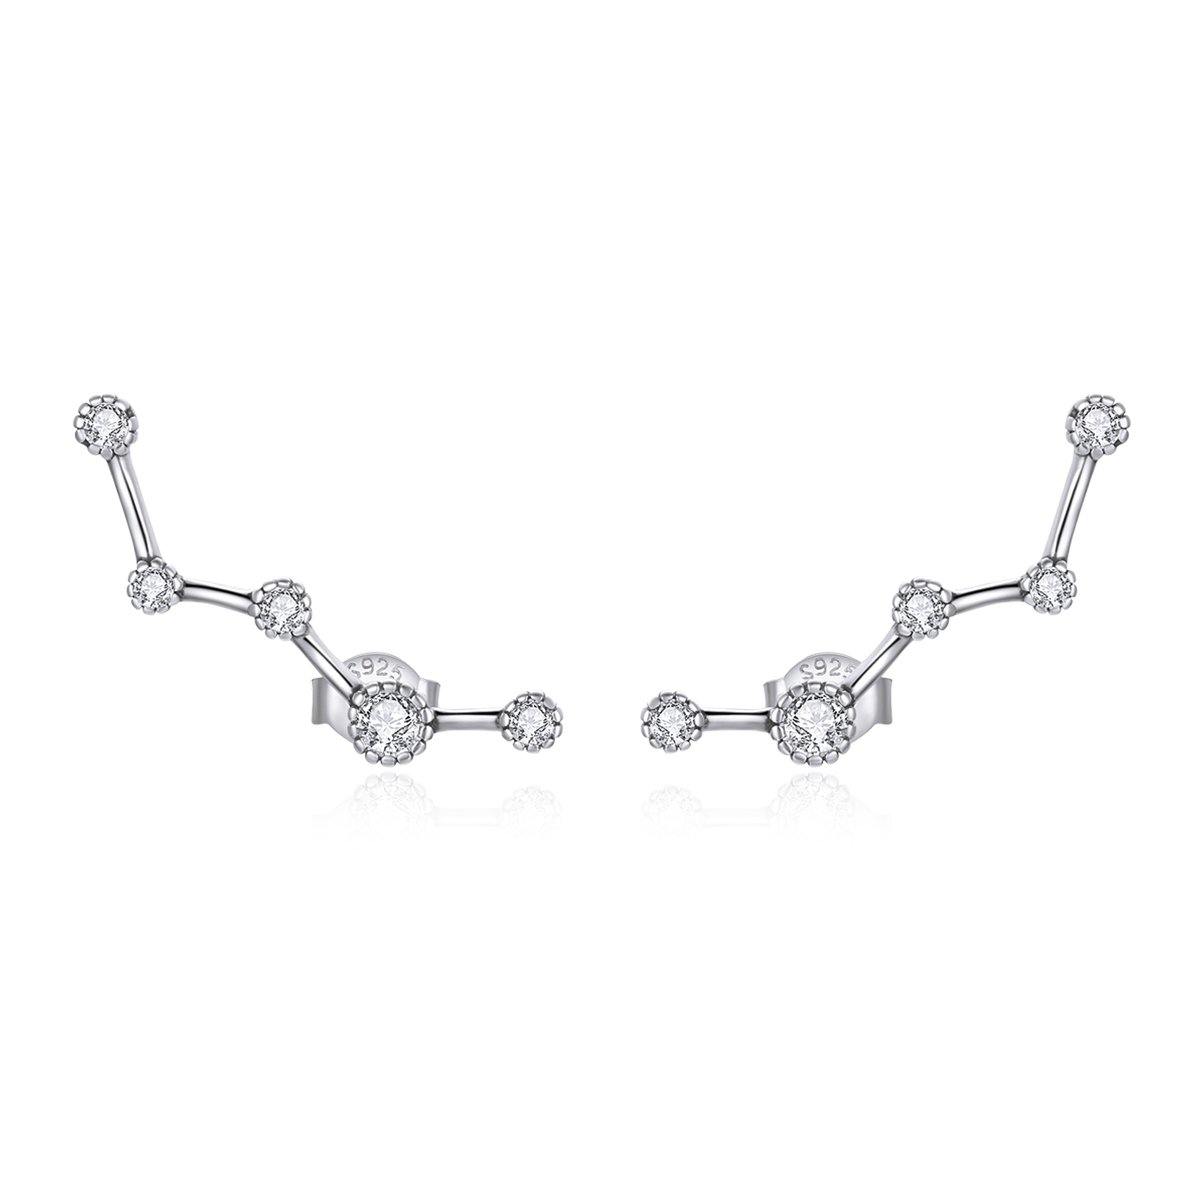 Shining Star Track 925 Sterling Silver Earrings - Aisllin Jewelry